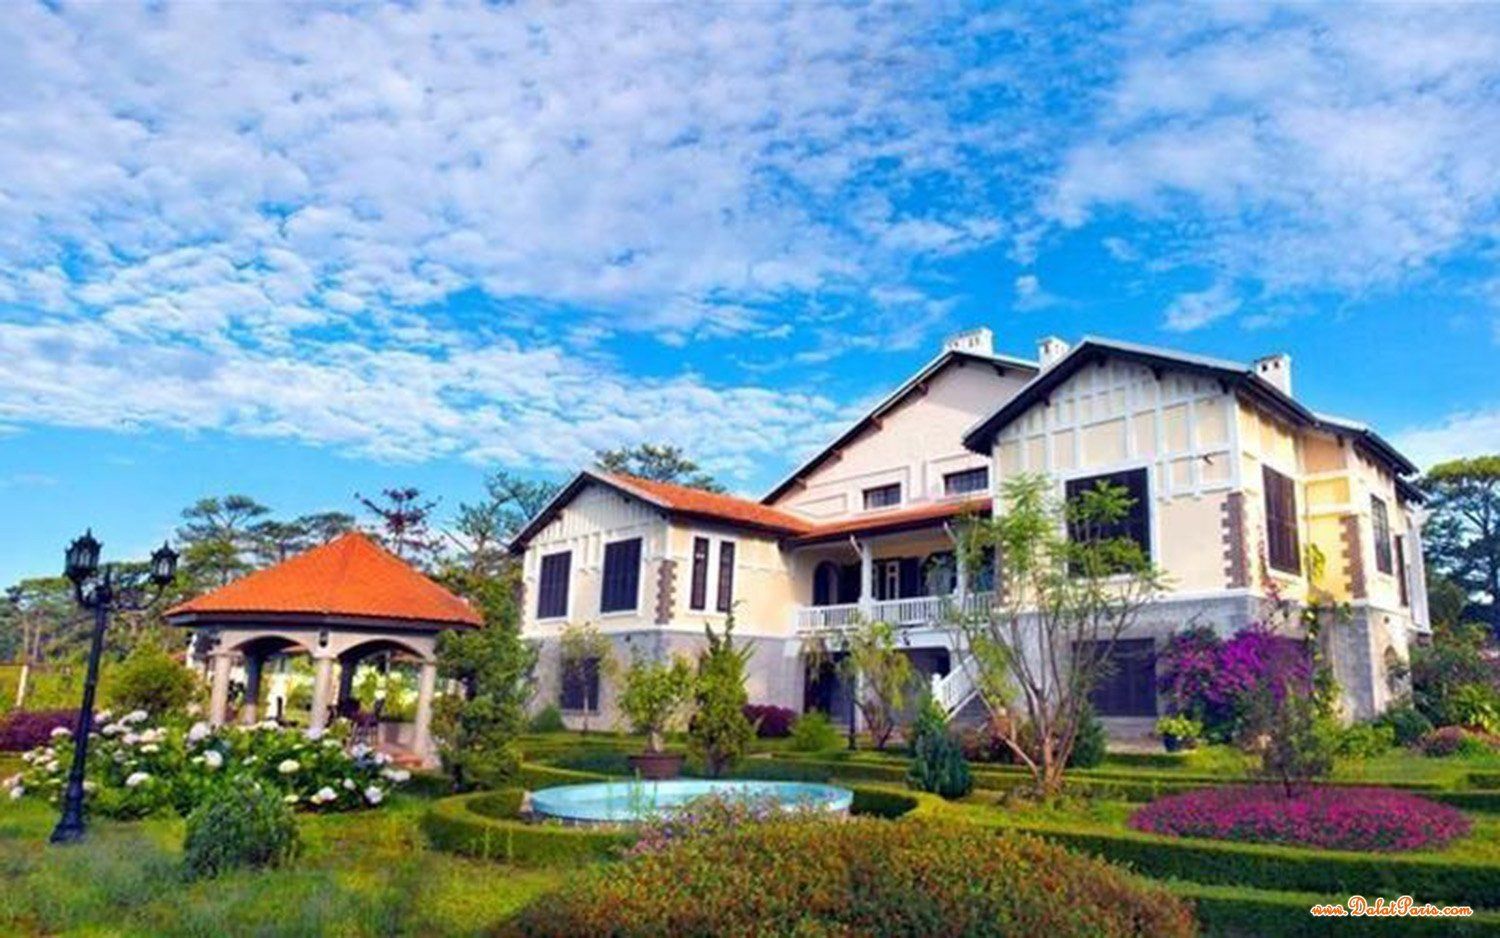 Đất nền Biệt Thự thuộc KQH Huỳnh Tấn Phát gần Trung Tâm TP. Đà Lạt, gần vòng xoay trại mát, thích hợp kinh doanh khách sạn, cà phê sân vườn, giá tốt đầu tư